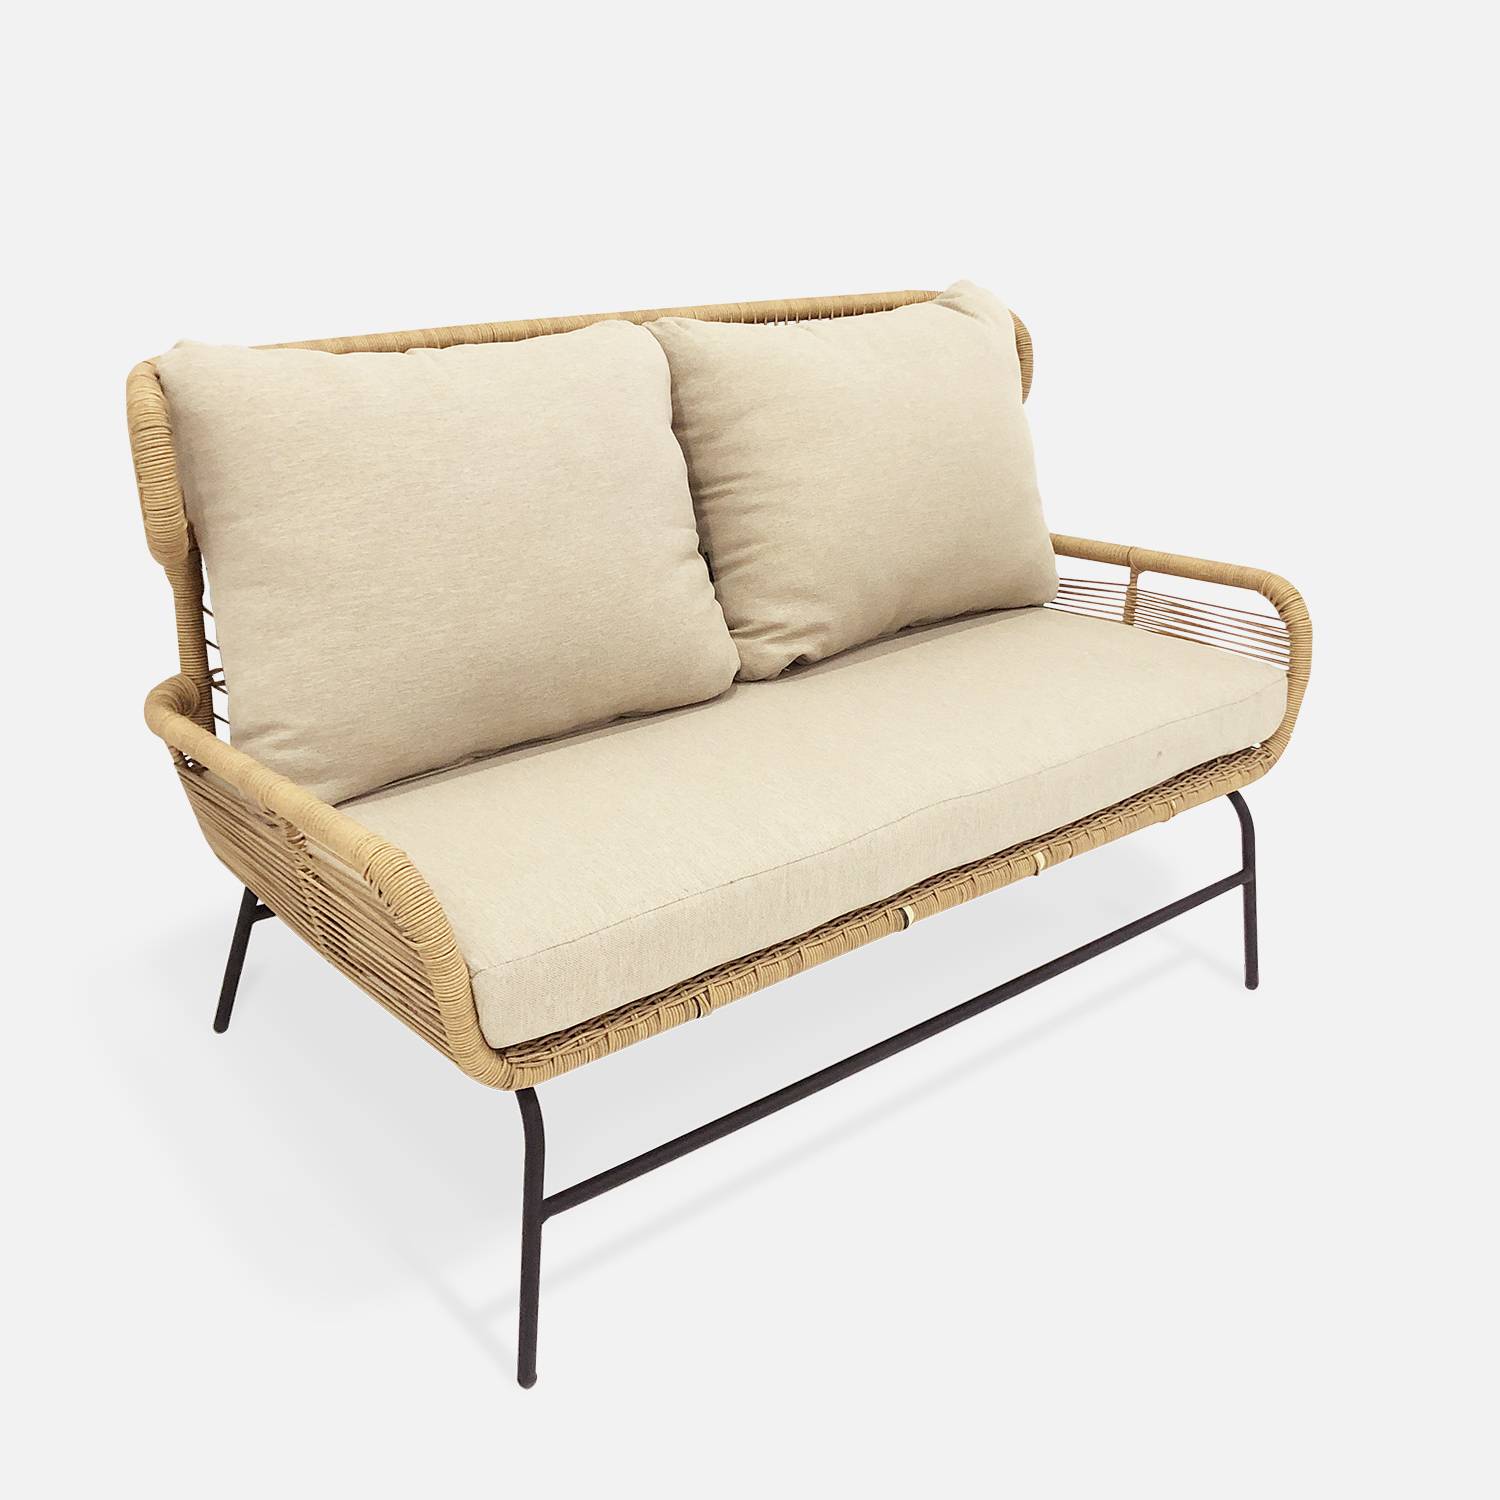 BALI 4-zits loungeset - 2-zits bankstel en 2 fauteuils met 1 bijzettafel, geweven rotan-effect wicker, beige kussens Photo3